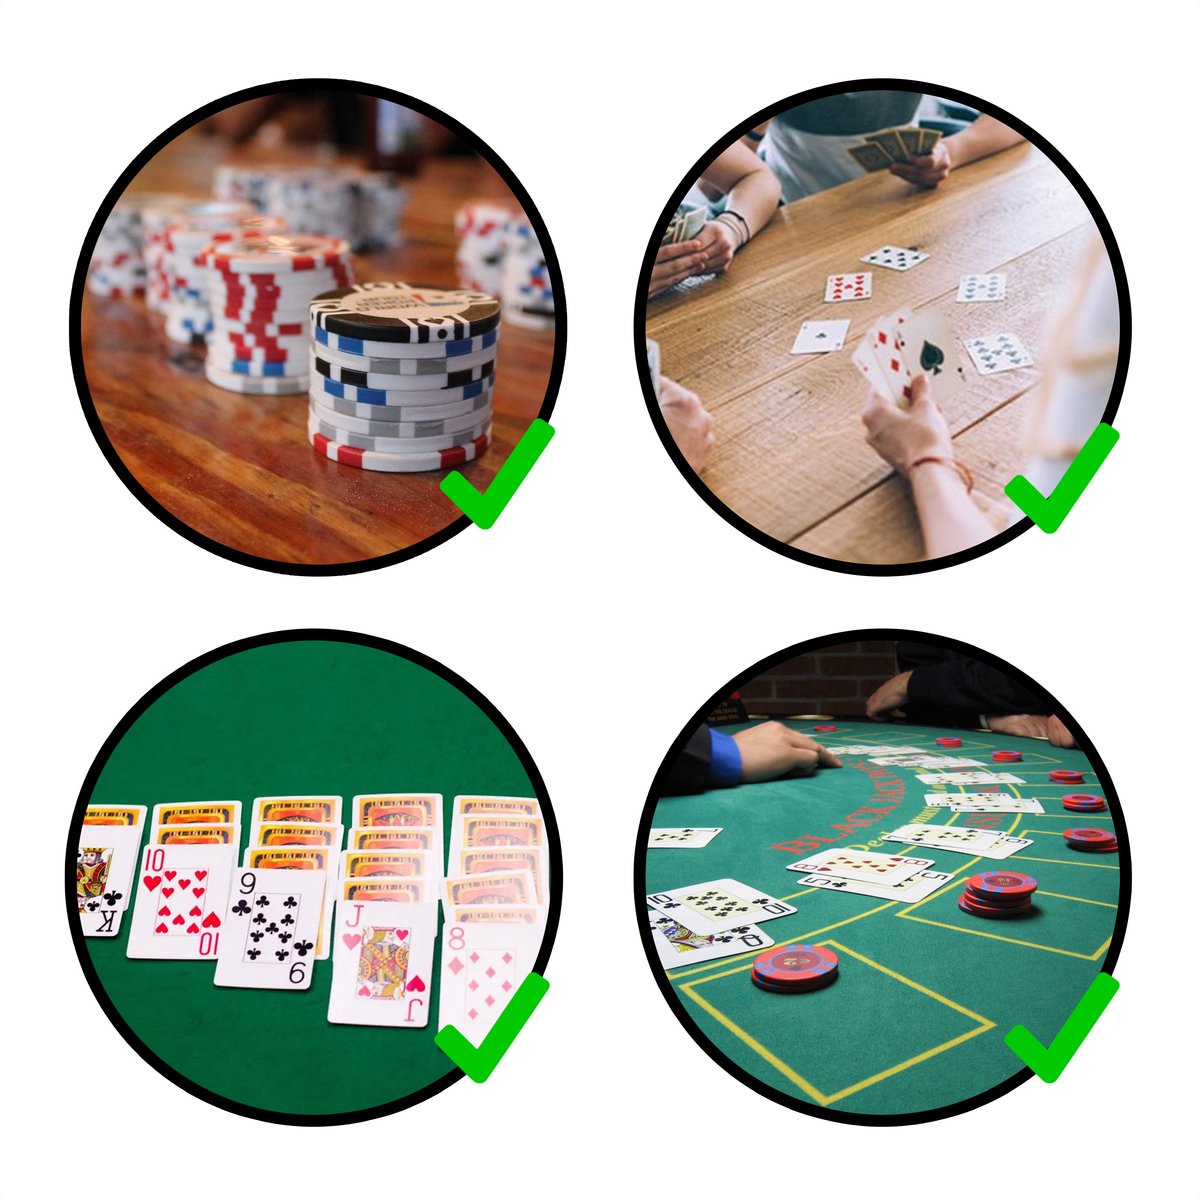 In Round Speelkaarten 2 Decks / Stokken - Stok Speel Kaarten - Spelkaarten - voor Volwassen en Kinderen - Pokerkaarten - Kaart Spel / Kaartspel Set - Pestkaarten - Poker / Blackjack / Pesten - Rood / Blauw